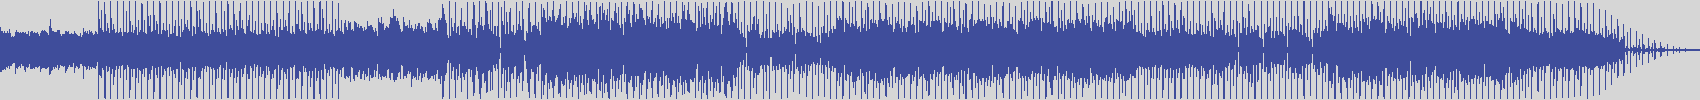 noclouds_chillout [NOC143] Vin Laine - Blueprint [Blue Mix] audio wave form